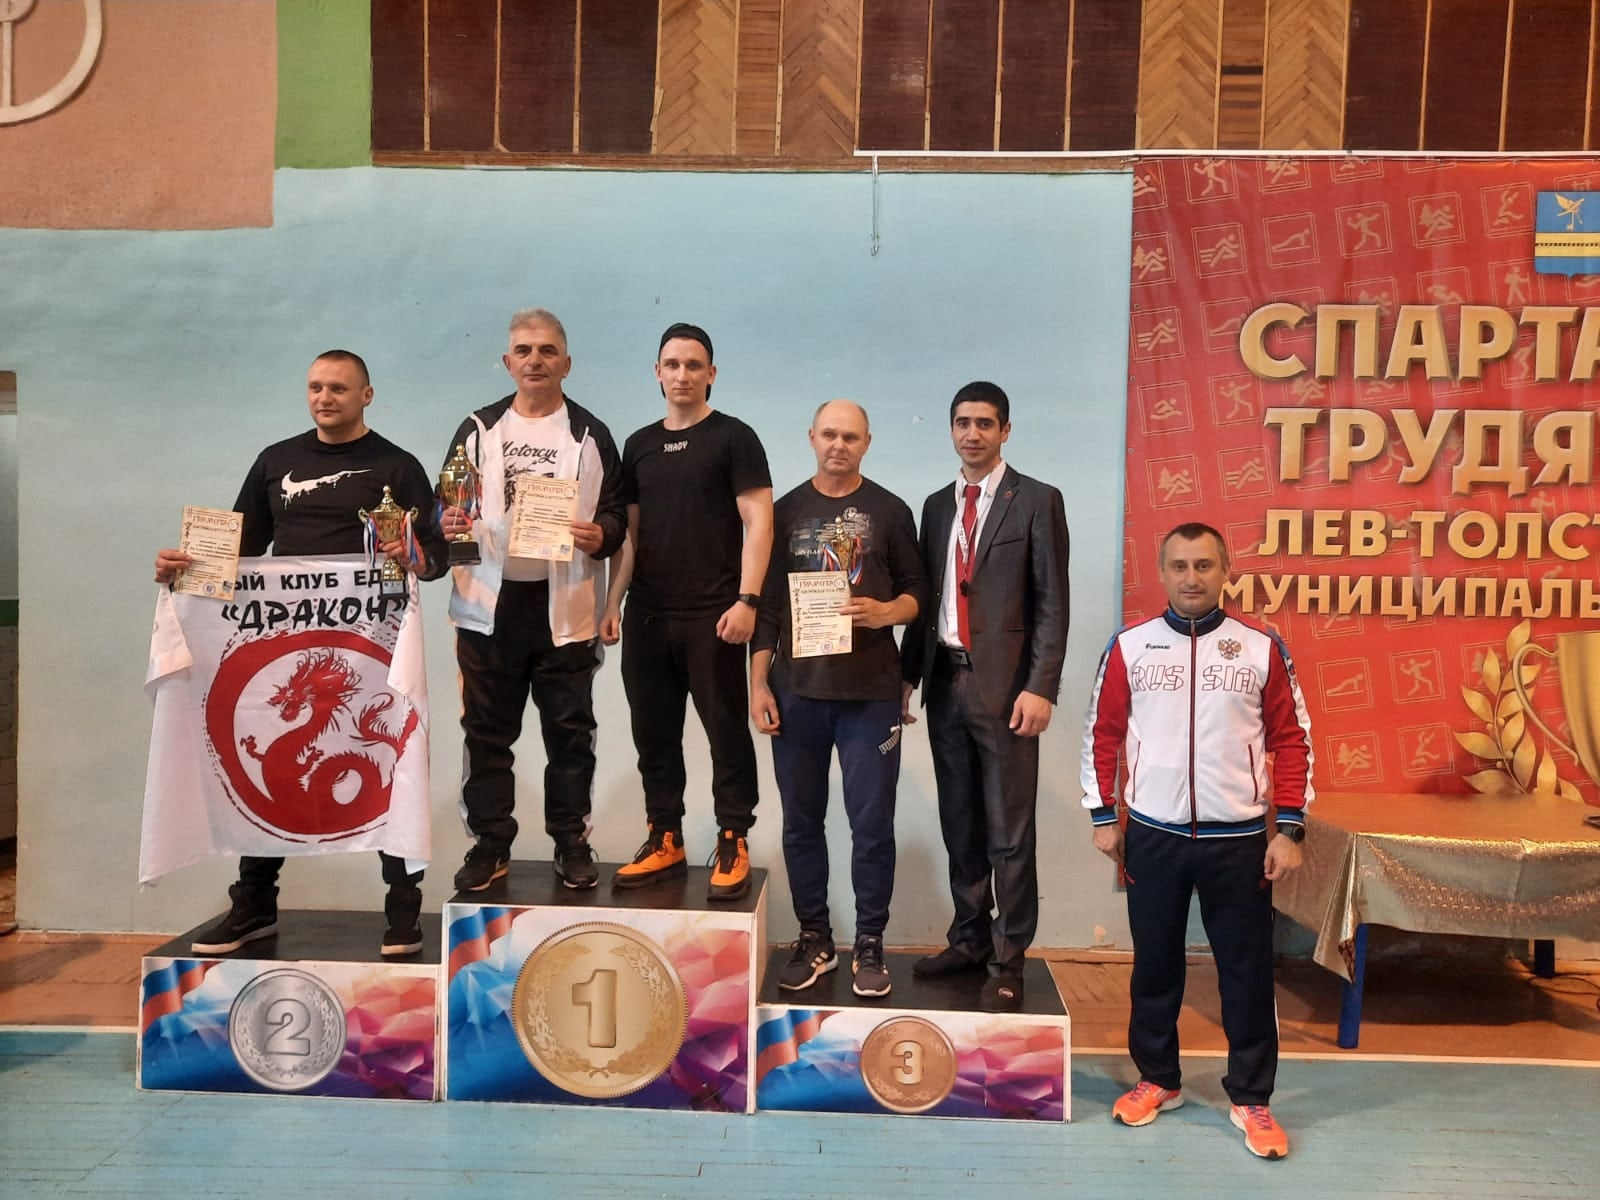 3 апреля во Льве Толстом состоялись муниципальные соревнования по всестилевому каратэ